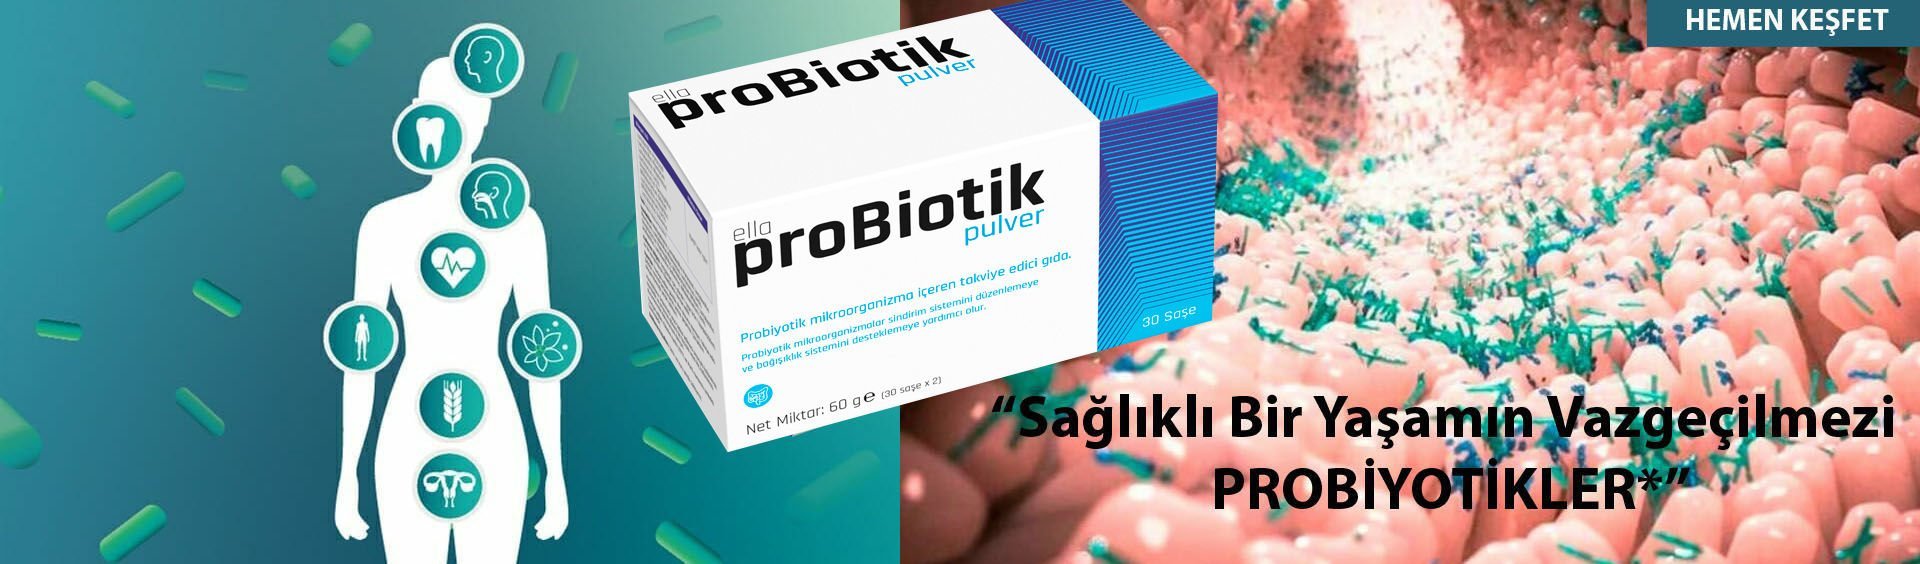 Probiyotik, Probiotic, Probiotik, Probiyotik Mikroorganizma